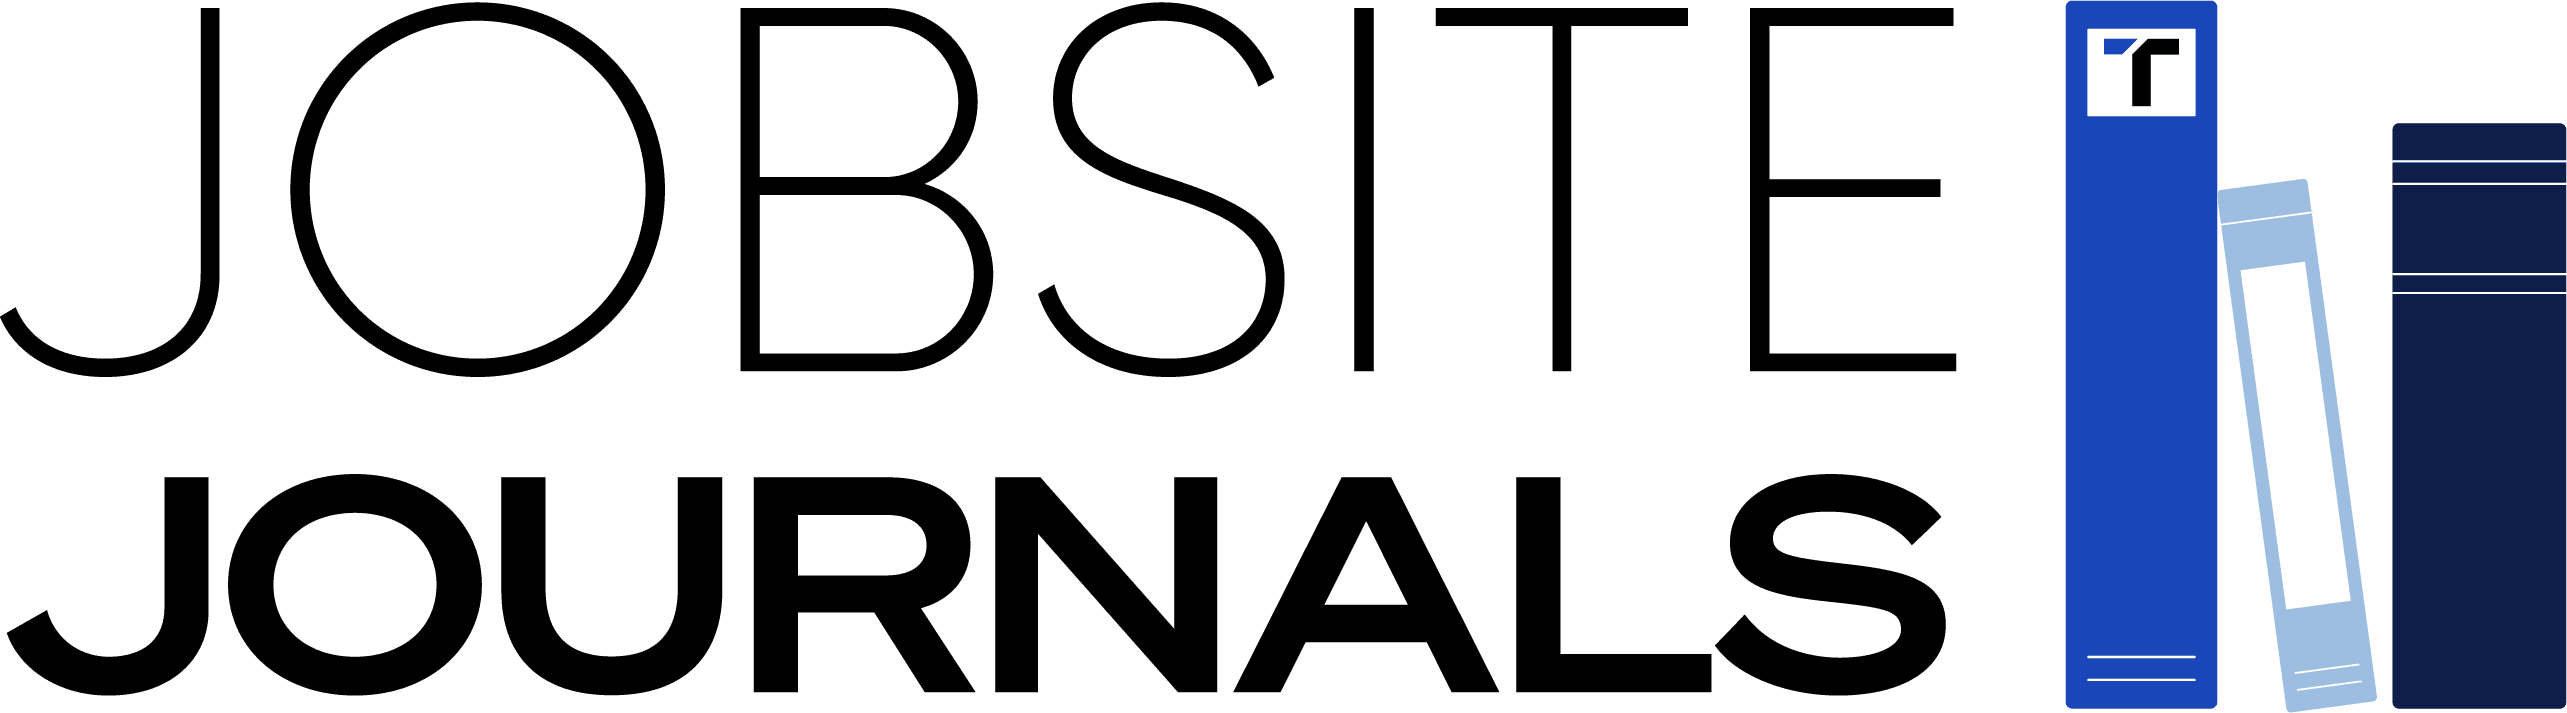 Jobsite Journal Logo_FINAL